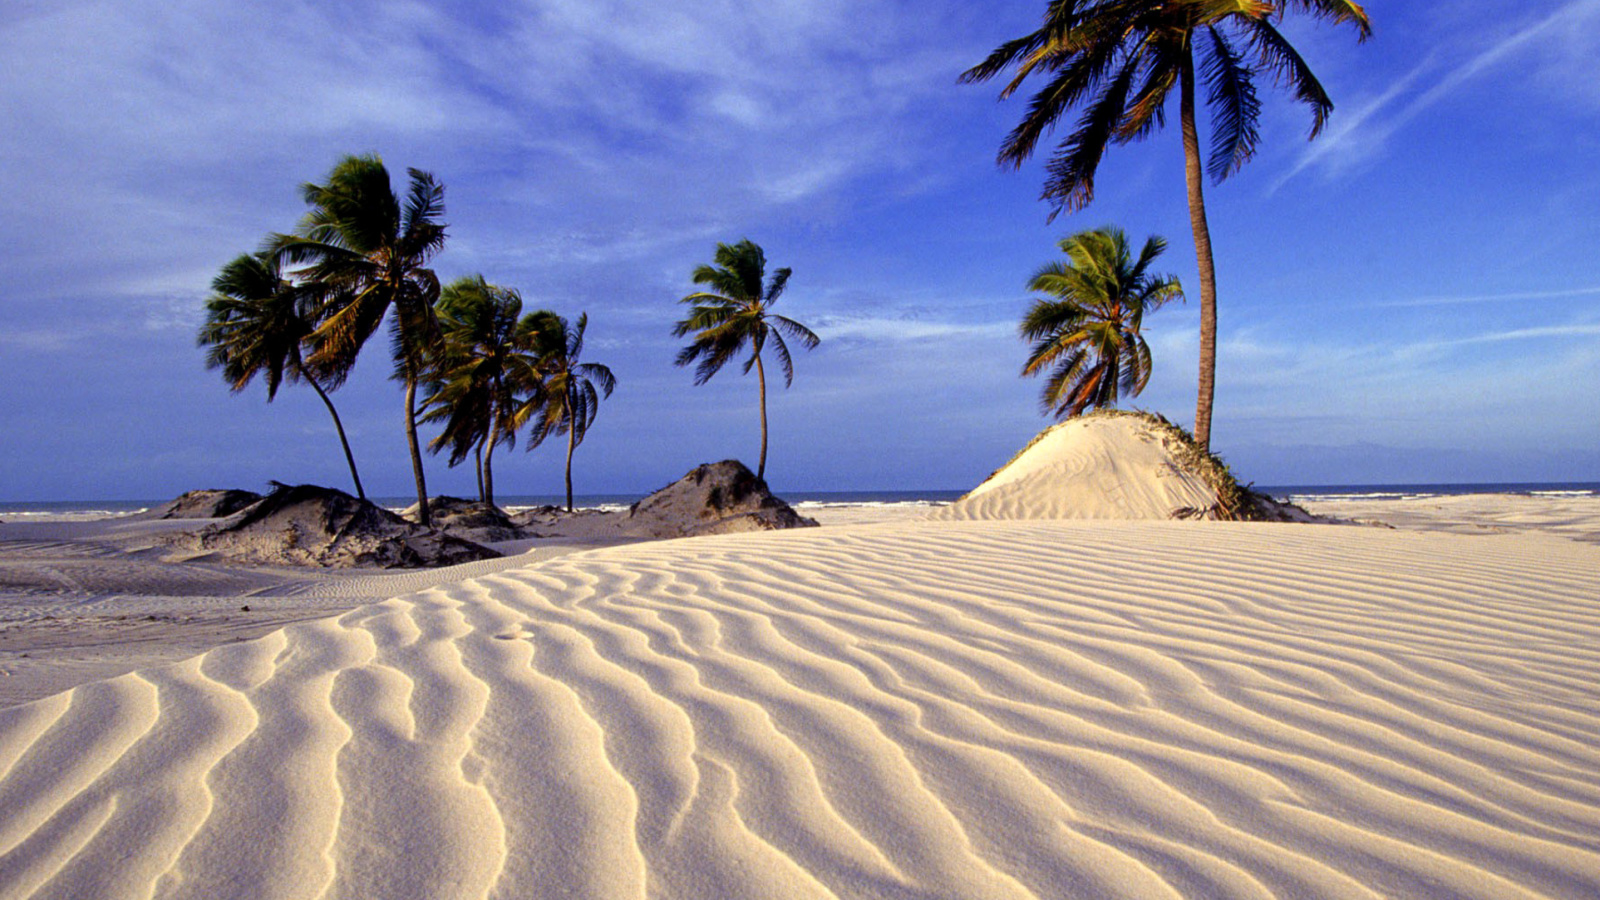 Sfondi Bahia Beach Resorts Puerto Rico 1600x900